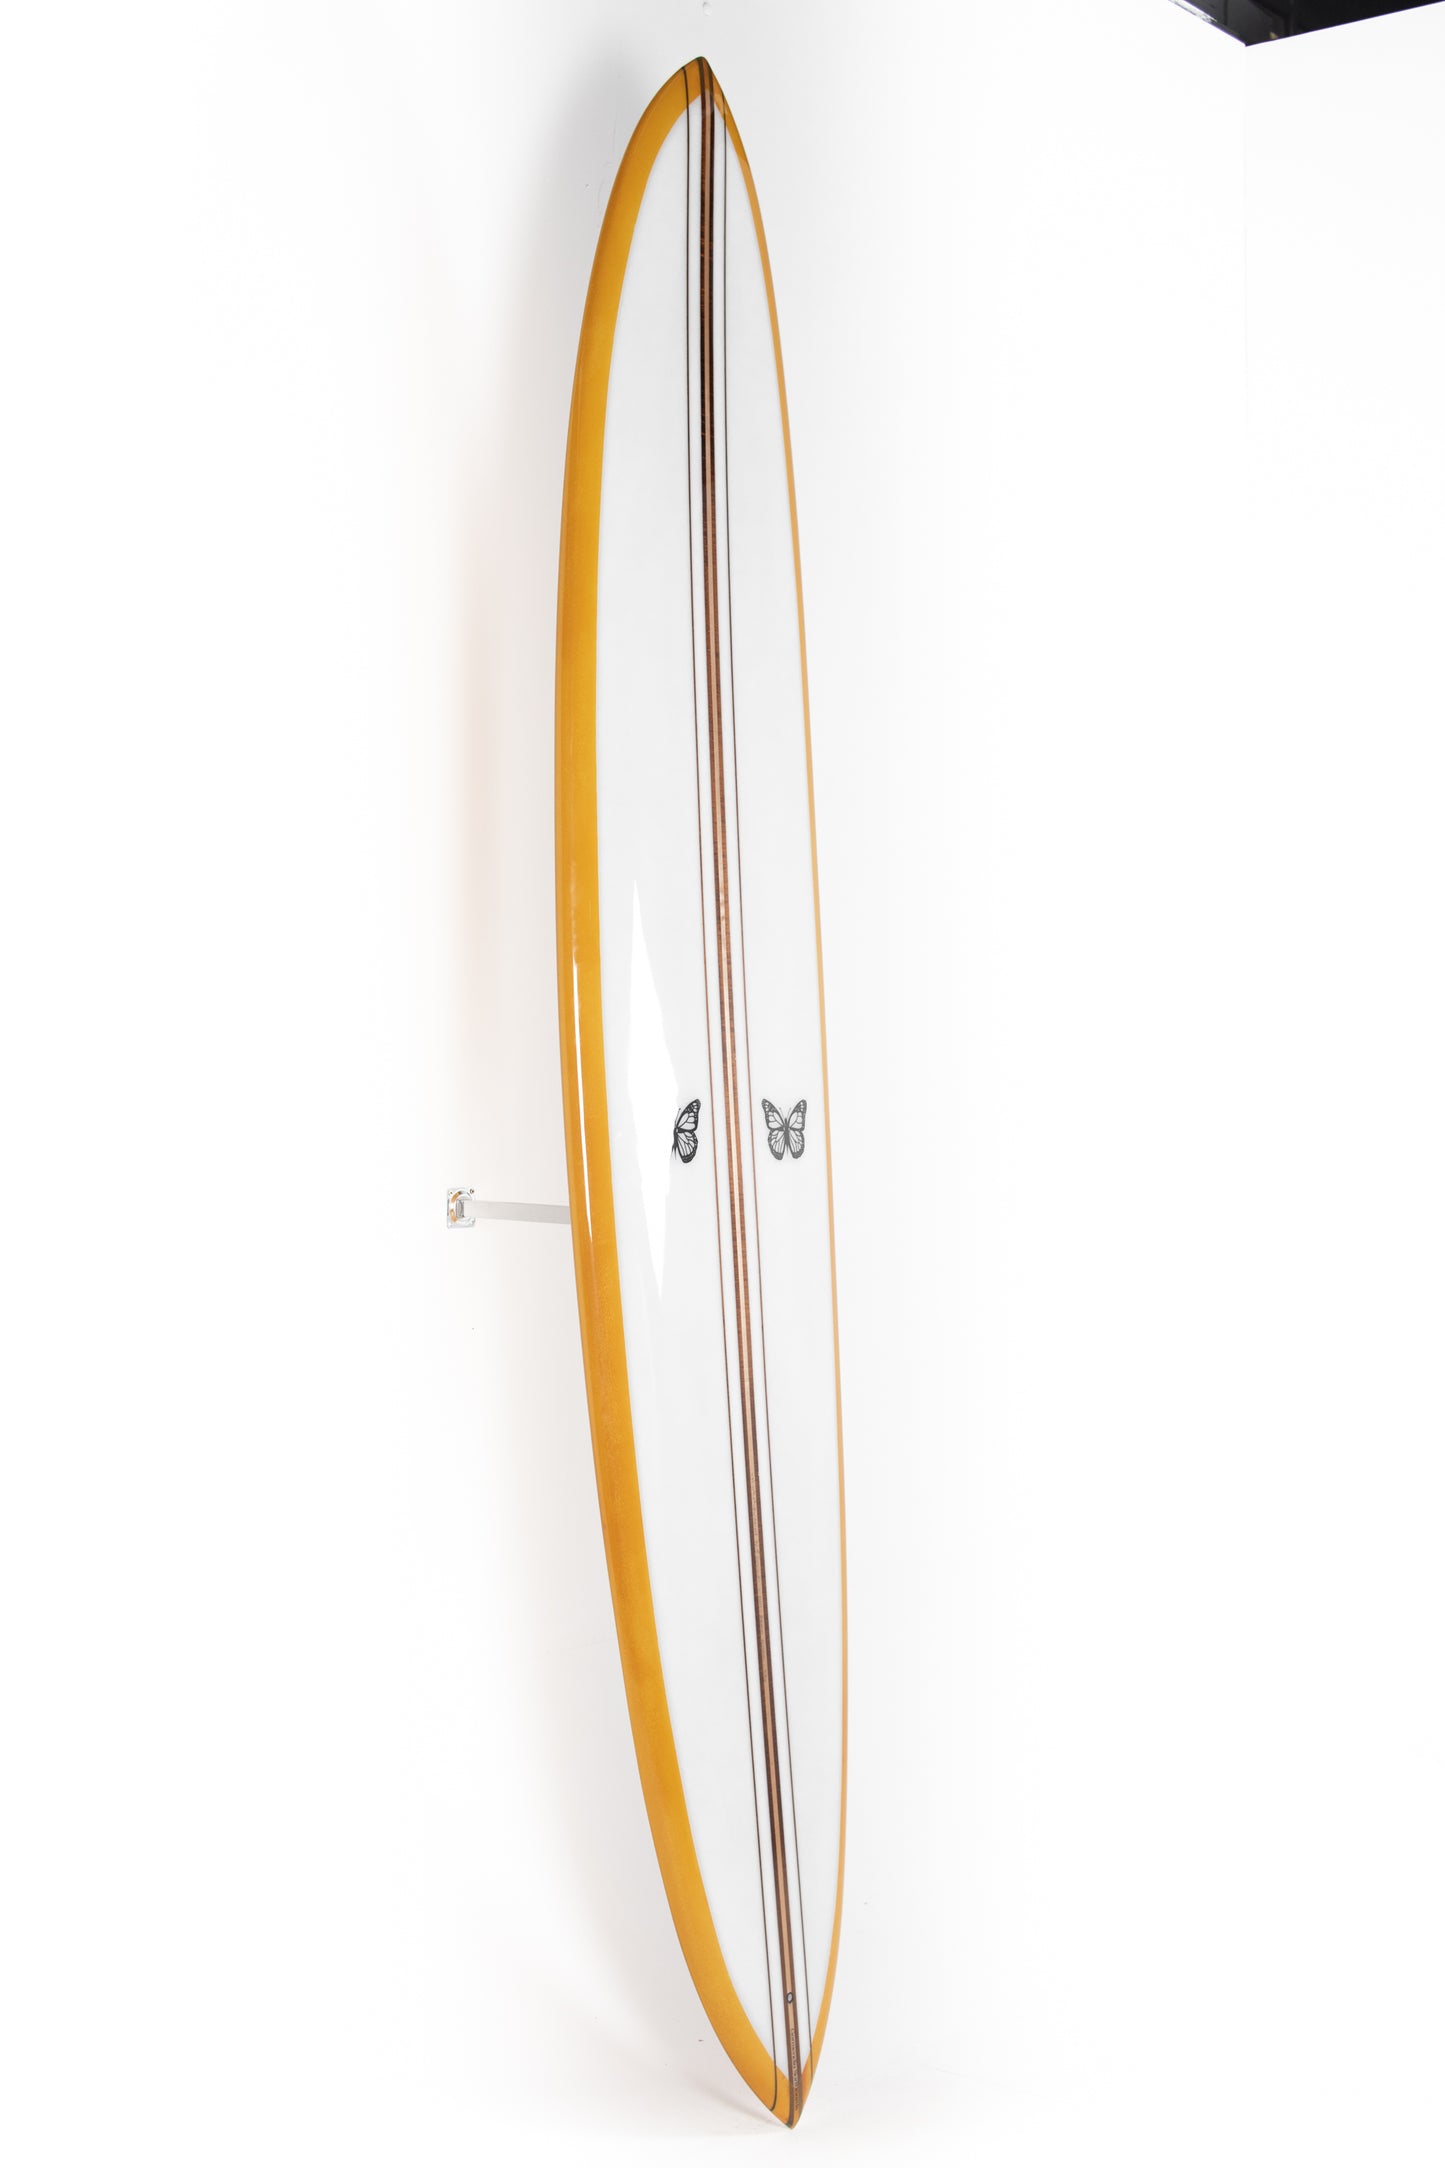 
                  
                    Pukas Surf Shop - Garmendia Surfboards - MINI GLIDER DREAMER - 9’6 x 22 7/8 x 3 1/4 - Ref.MINIGLIDER96
                  
                